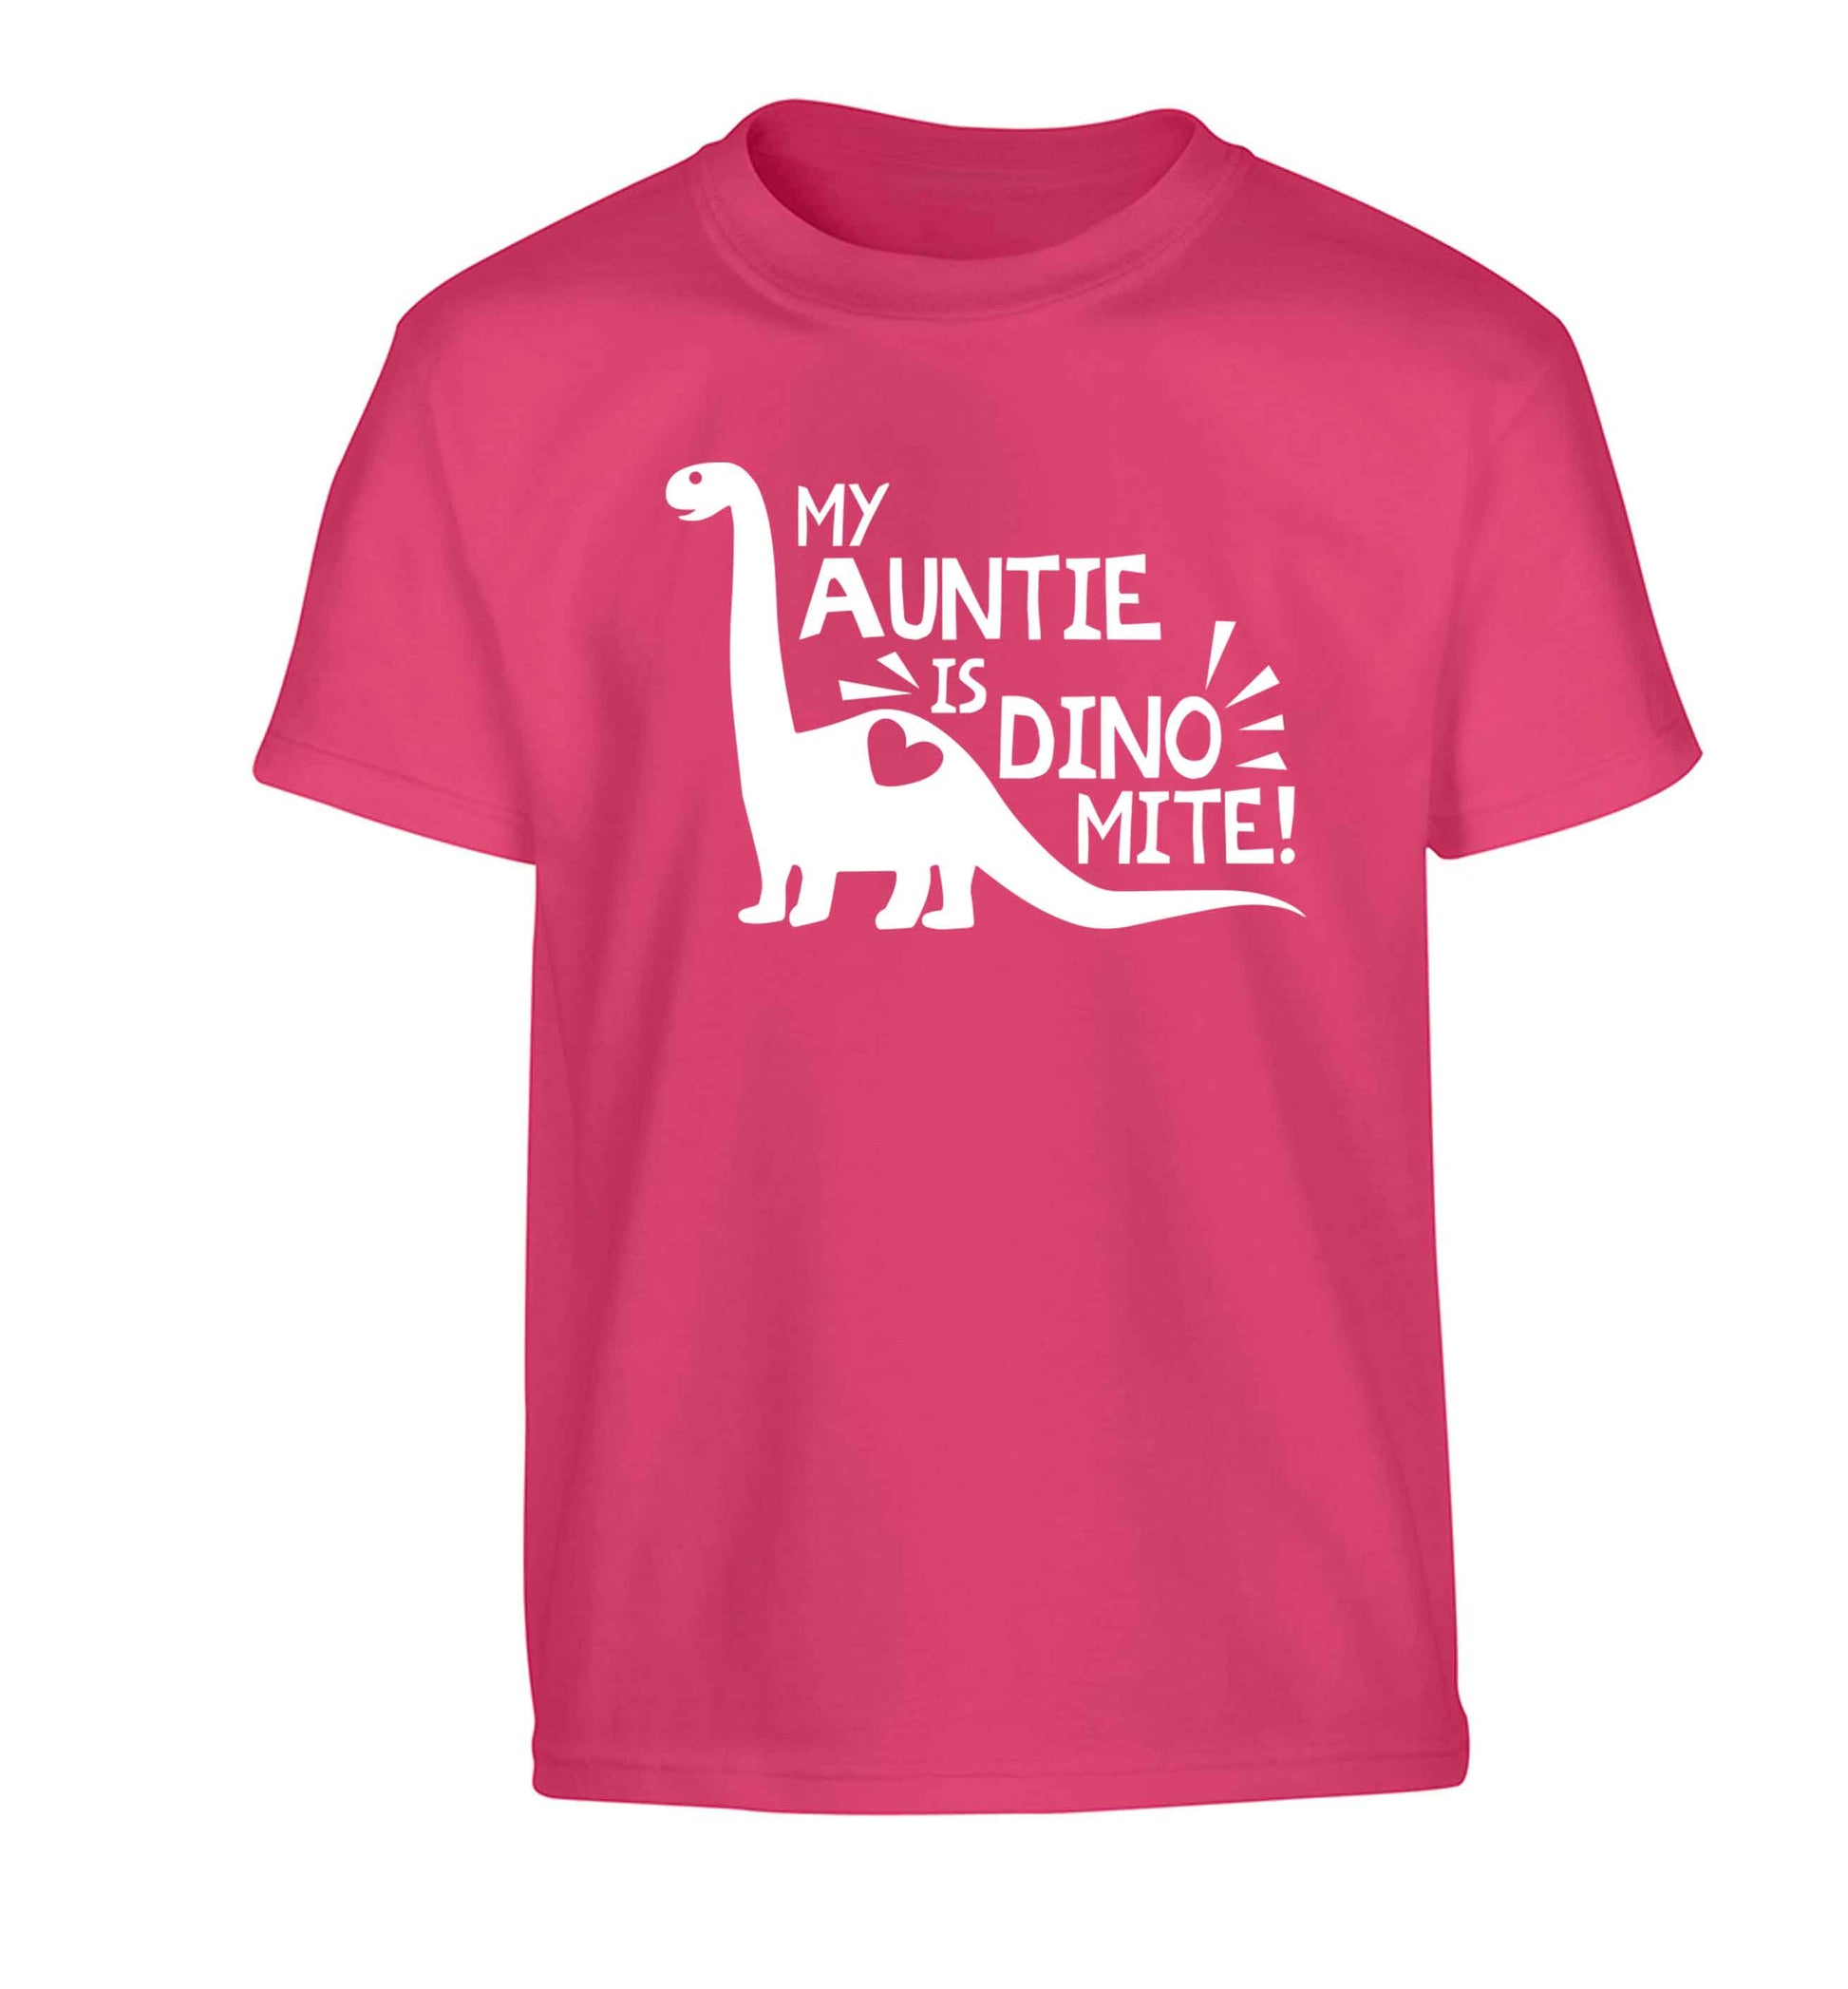 My auntie is dinomite! Children's pink Tshirt 12-13 Years